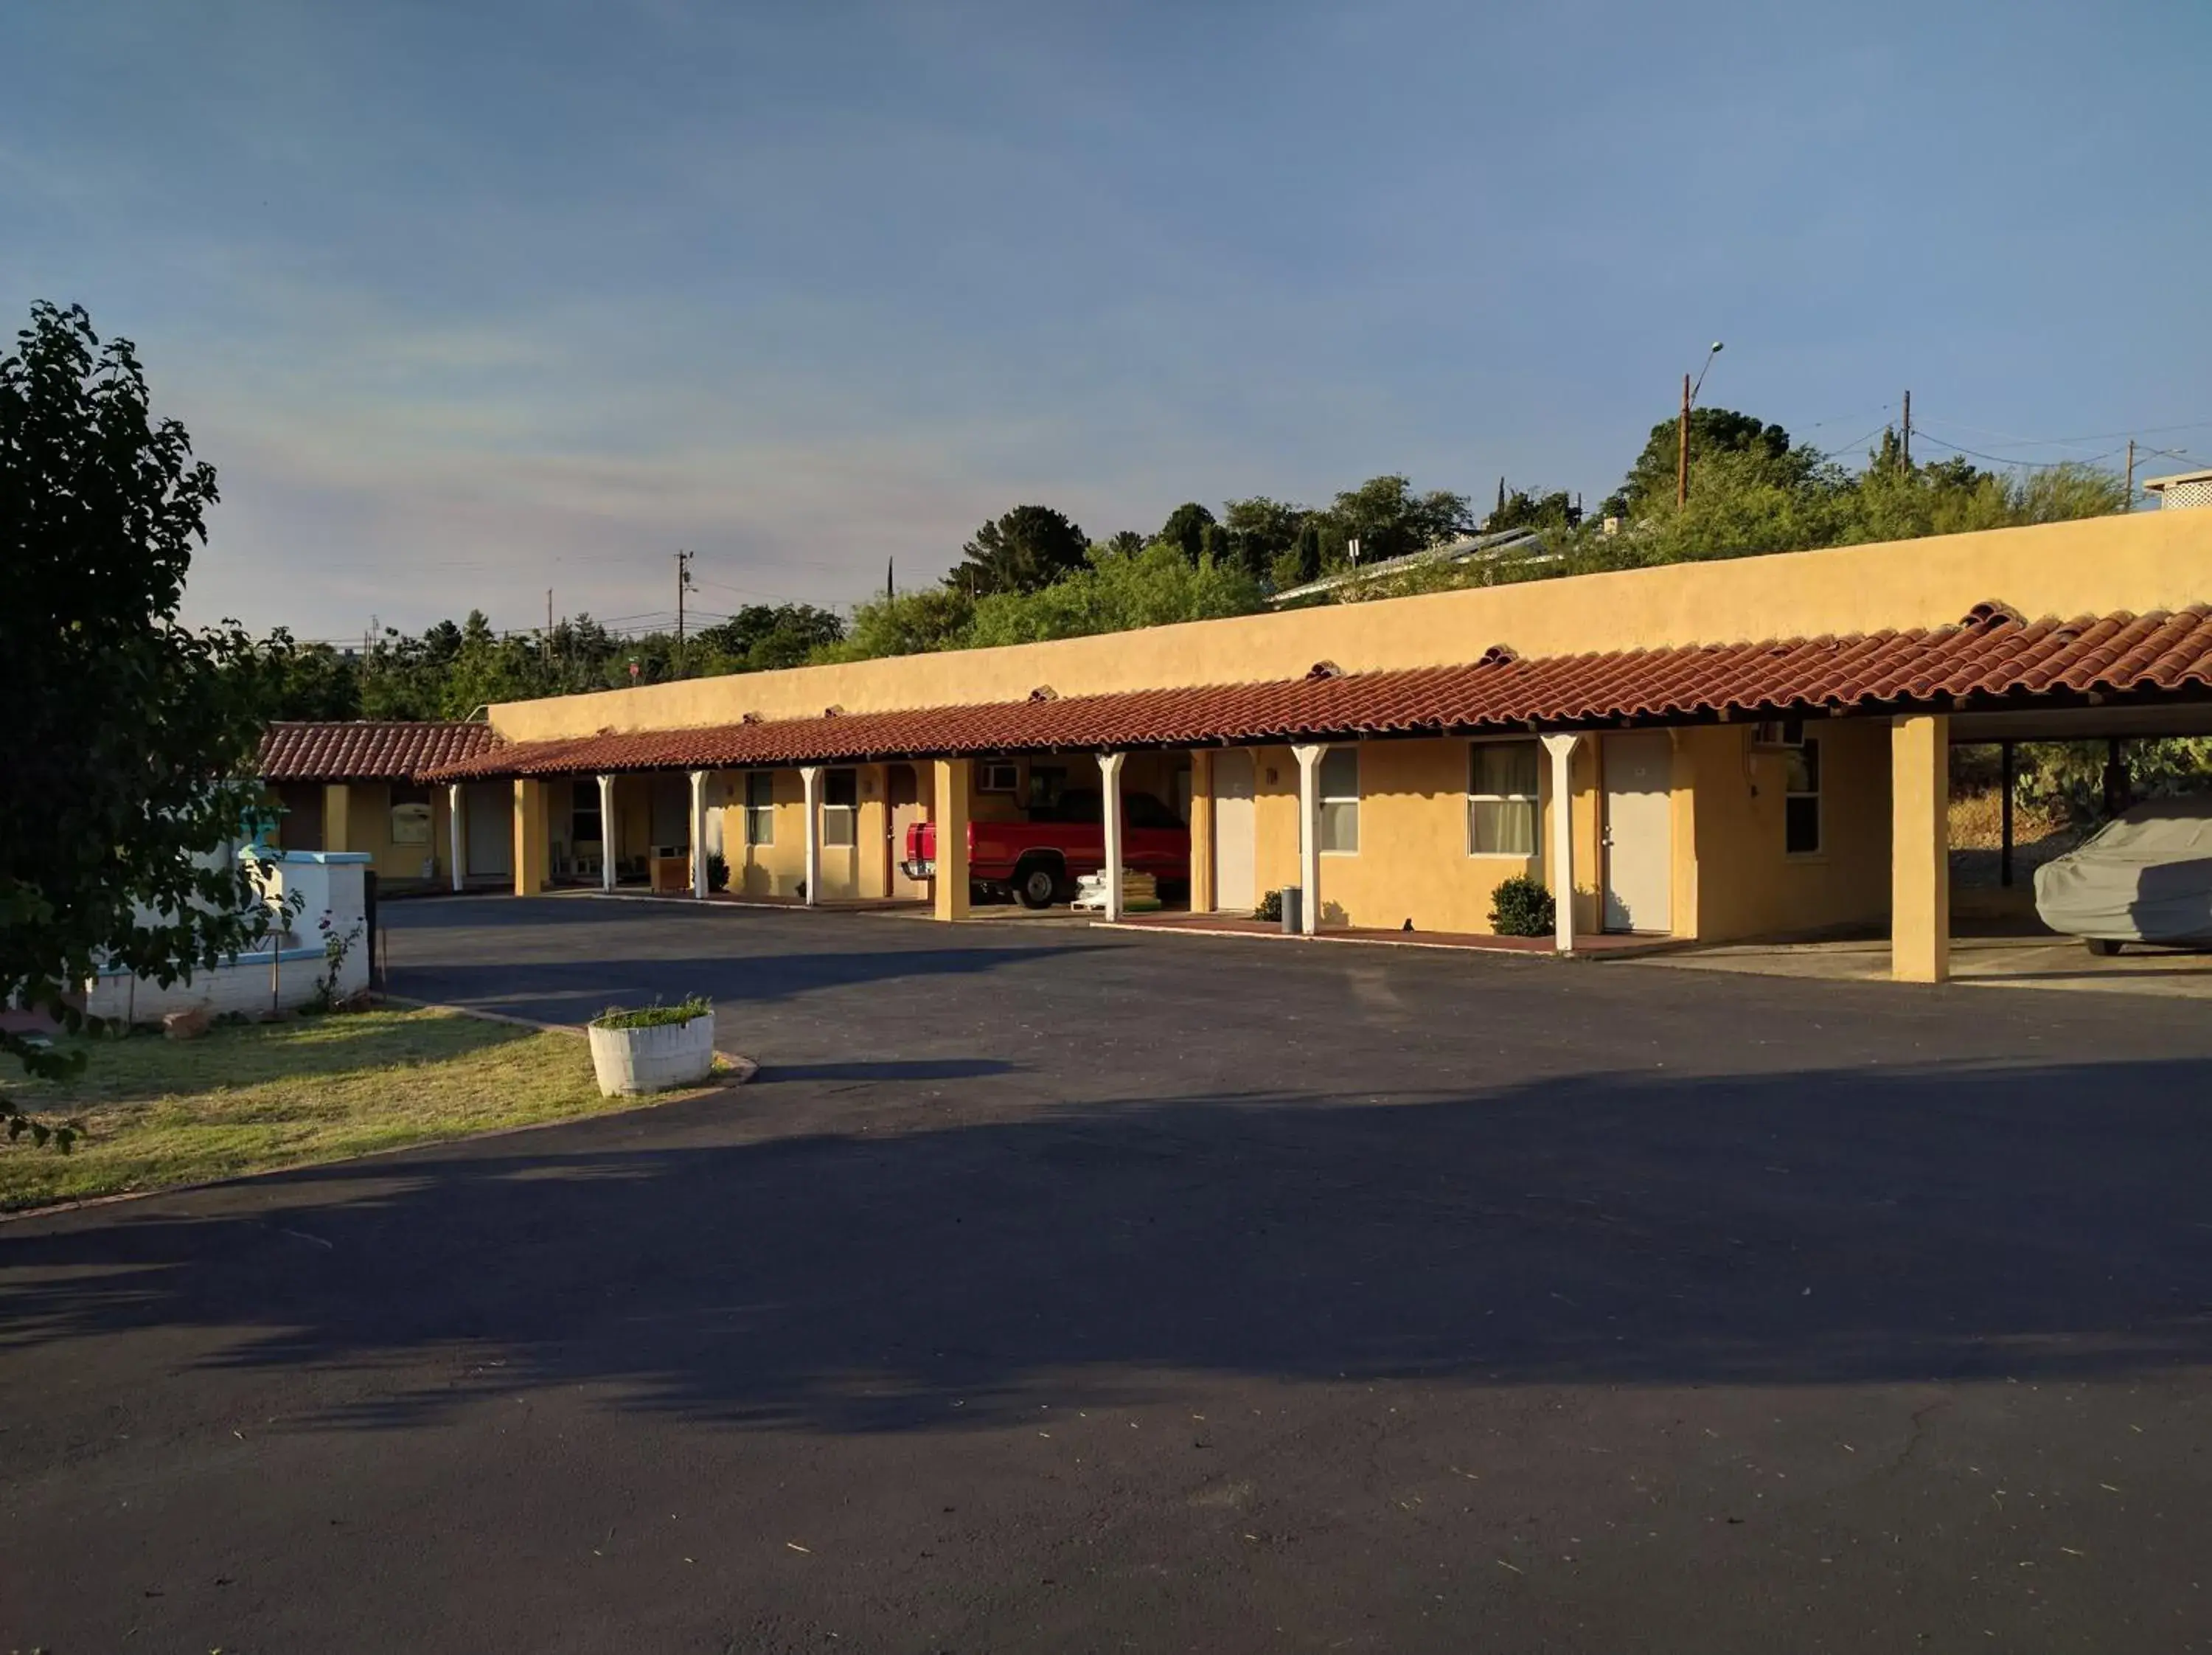 Area and facilities, Property Building in El Rey Motel